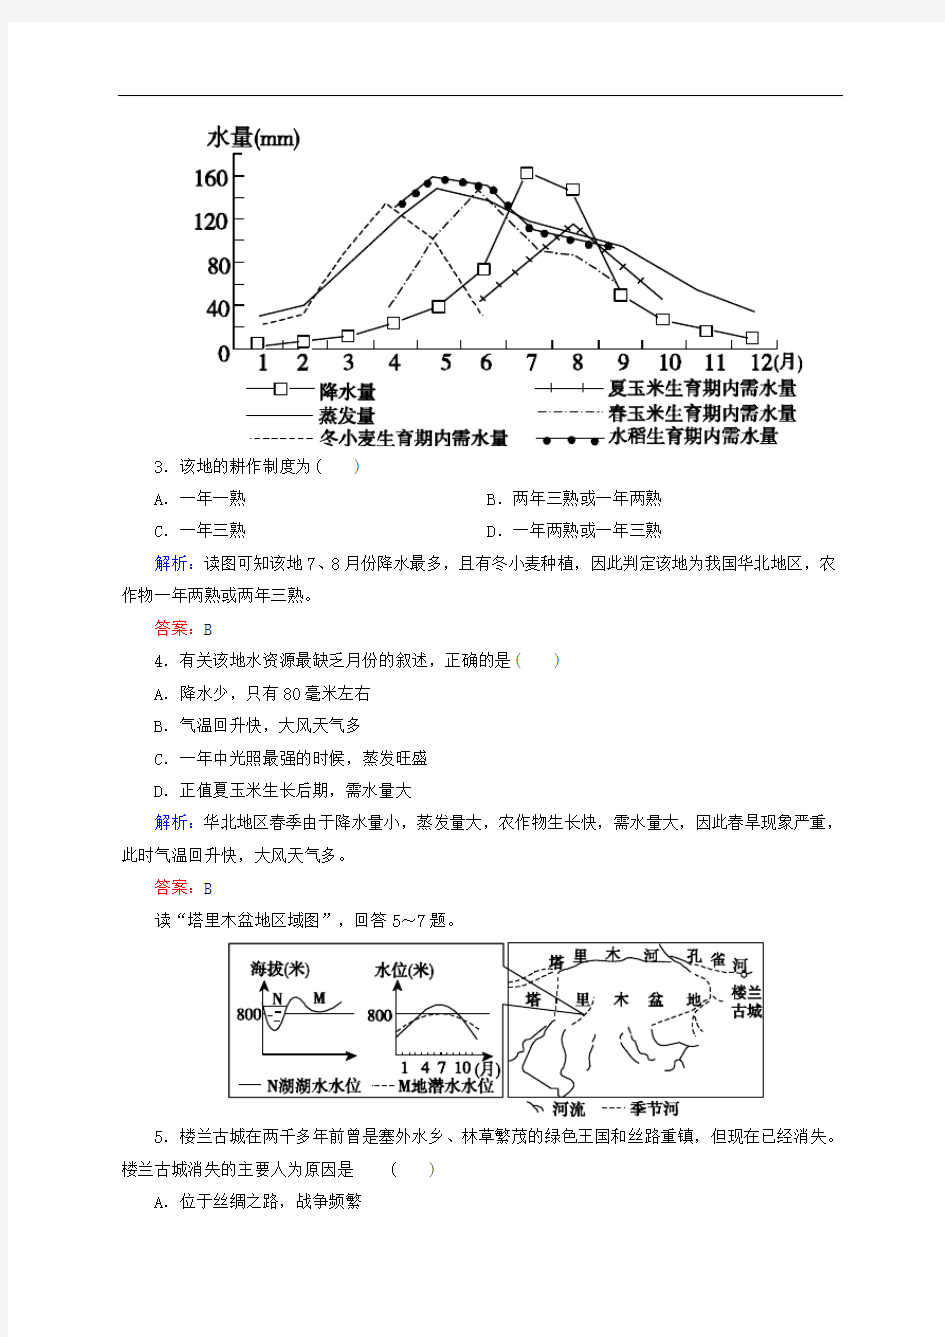 高考地理总复习 开卷速查(四十一)中国地理分区